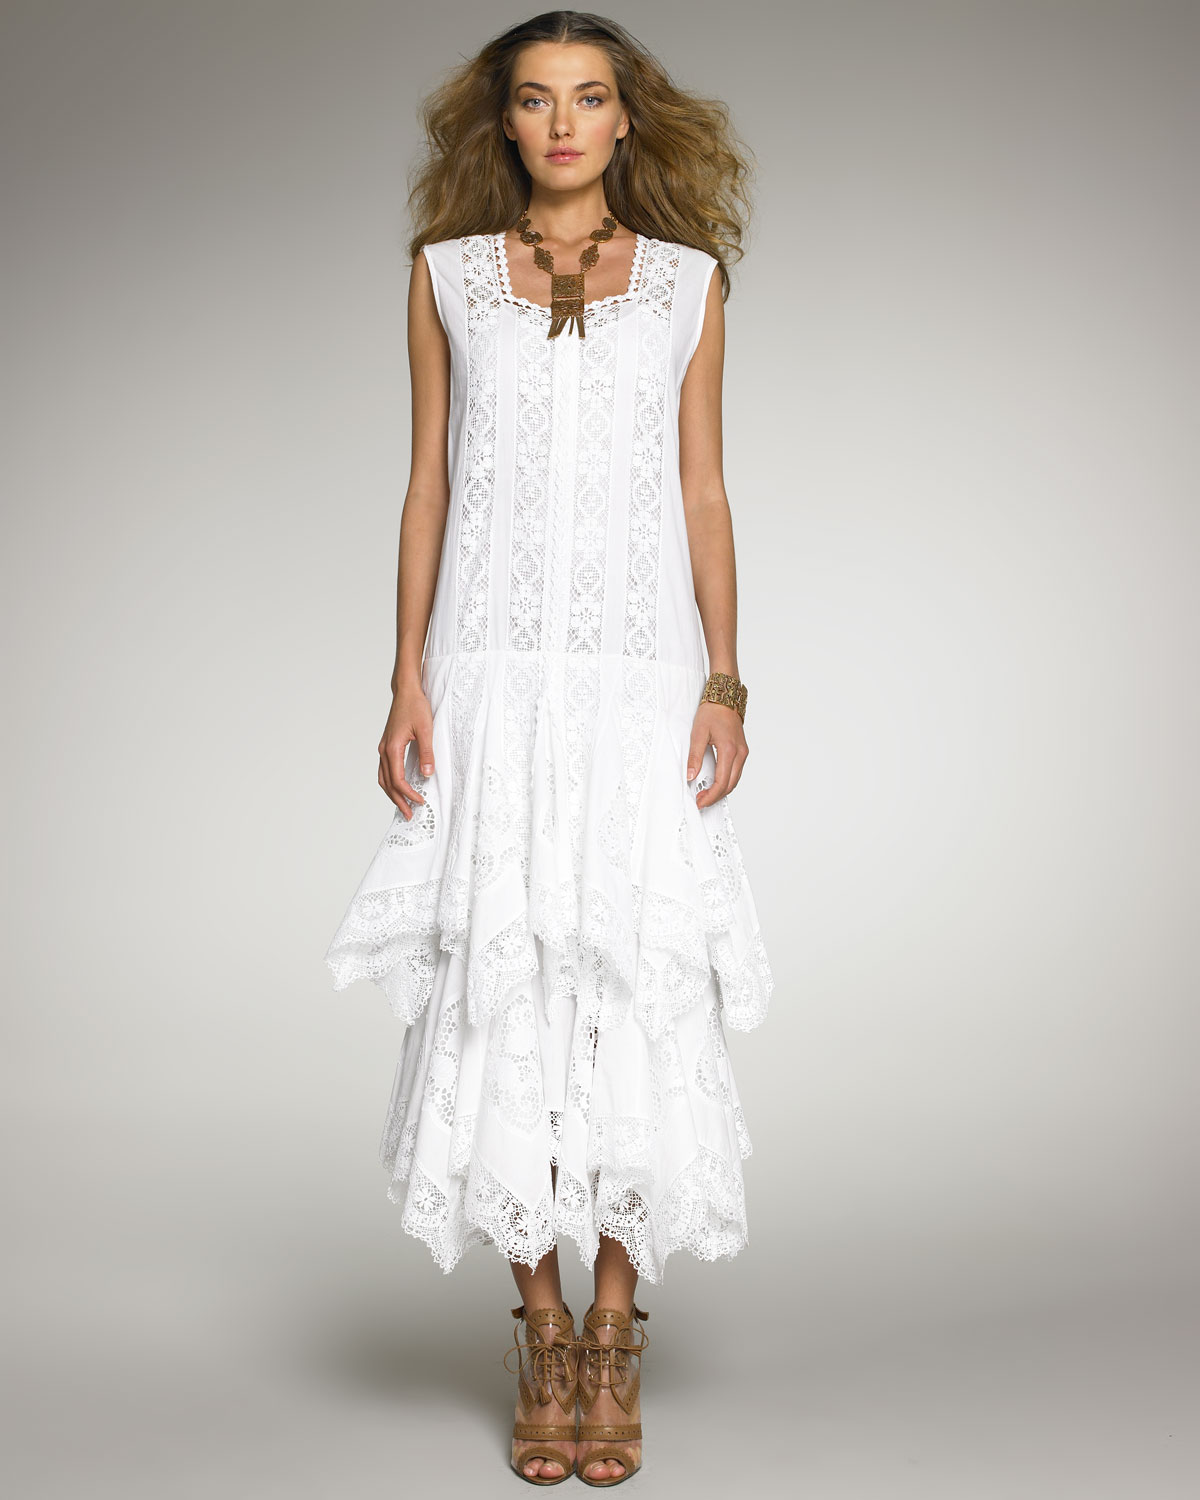 Lyst - Oscar de la renta Sleeveless Lace Dress in White